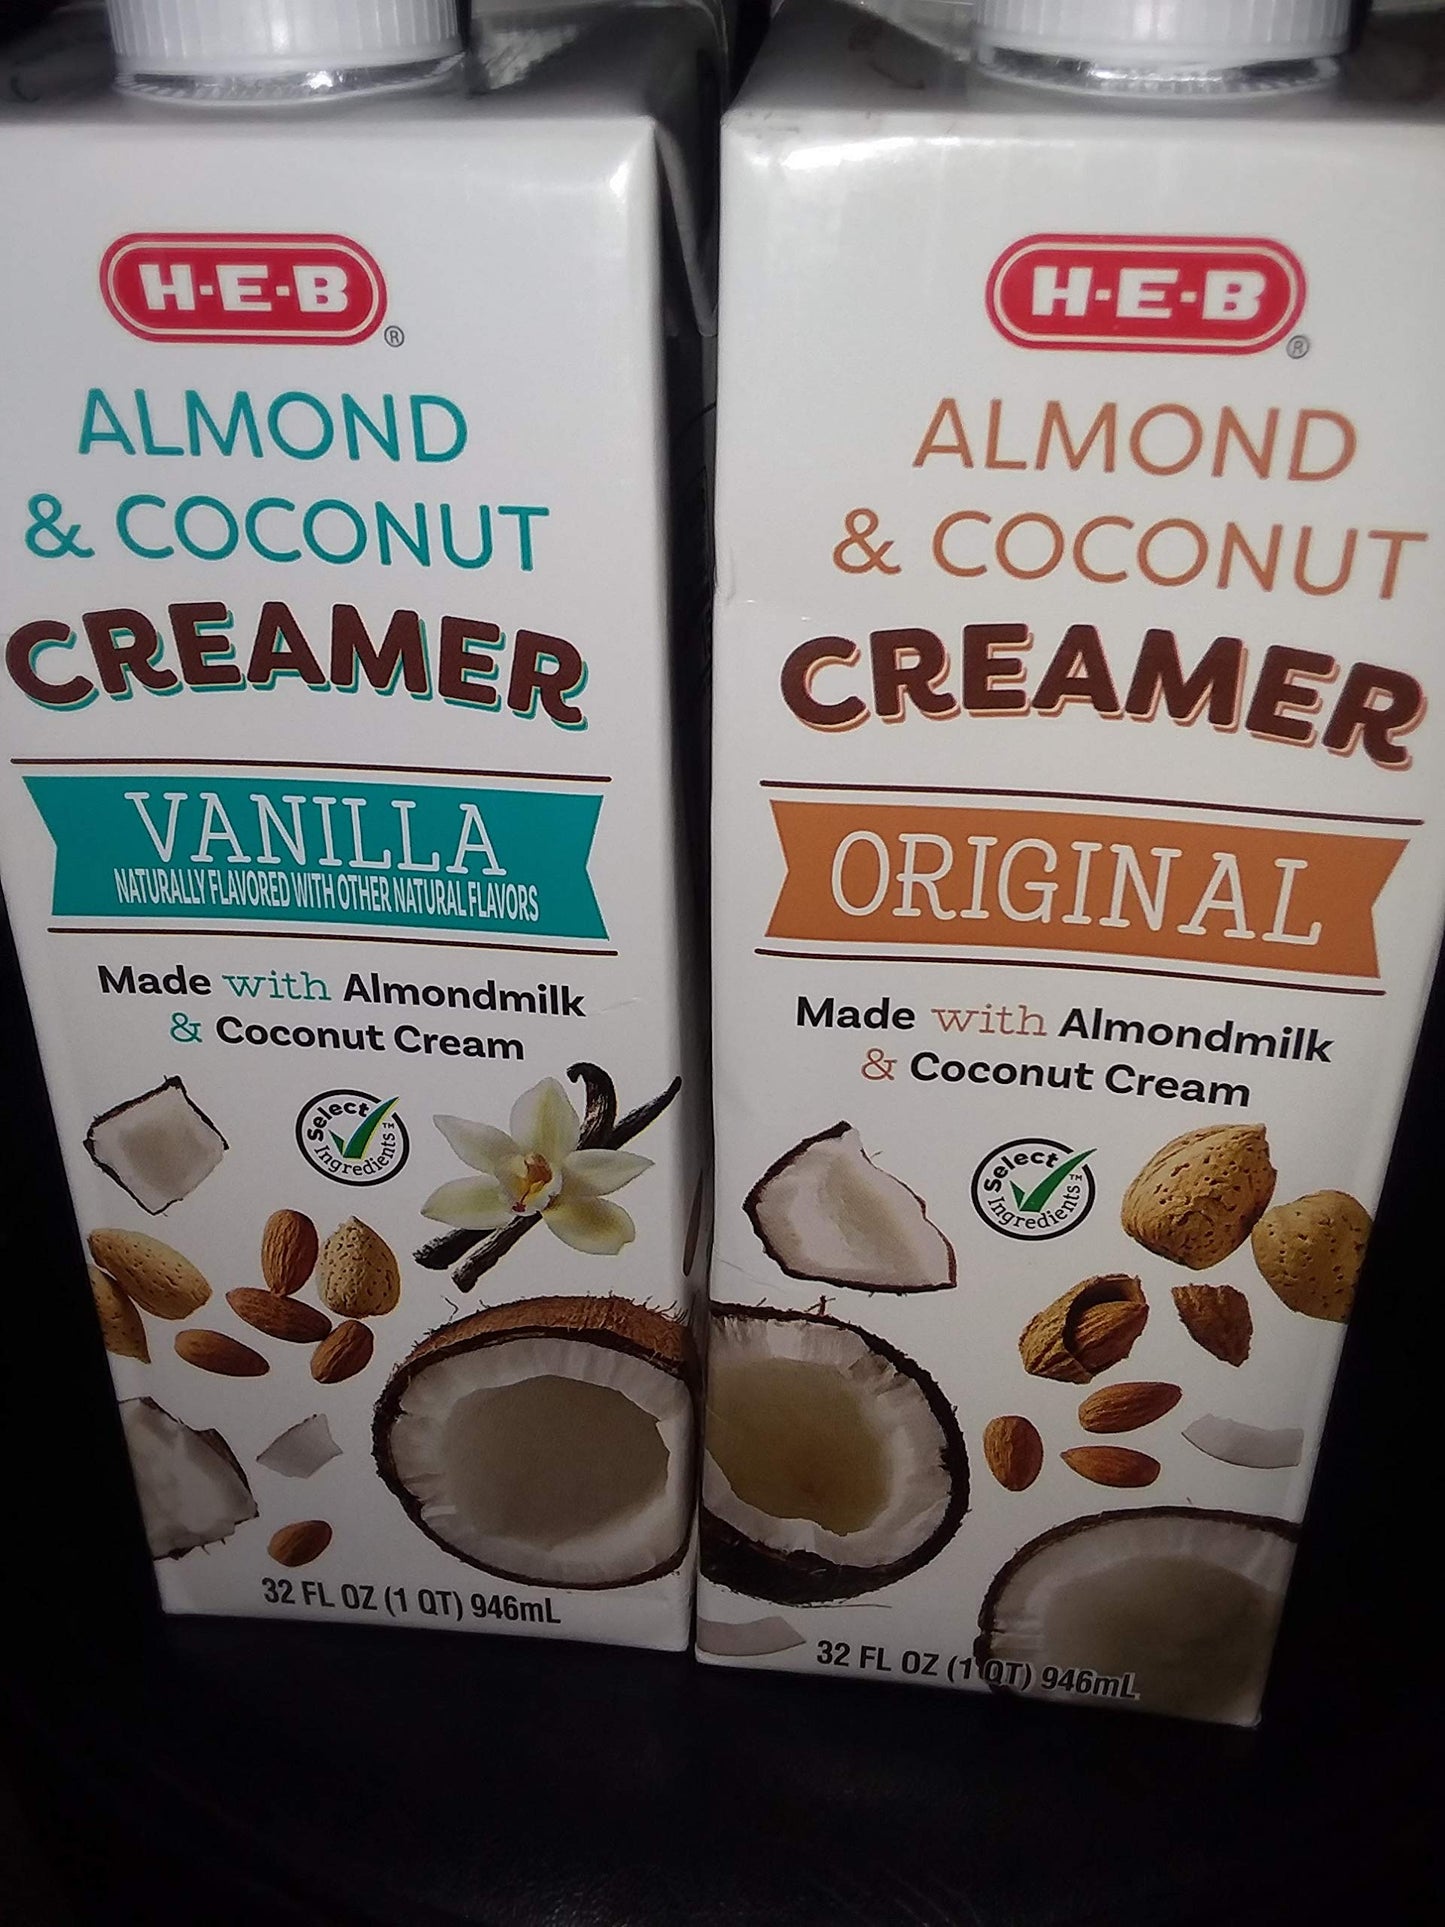 H E B Almond & Coconut Creamer 32 oz 2 pack Original and Vanilla